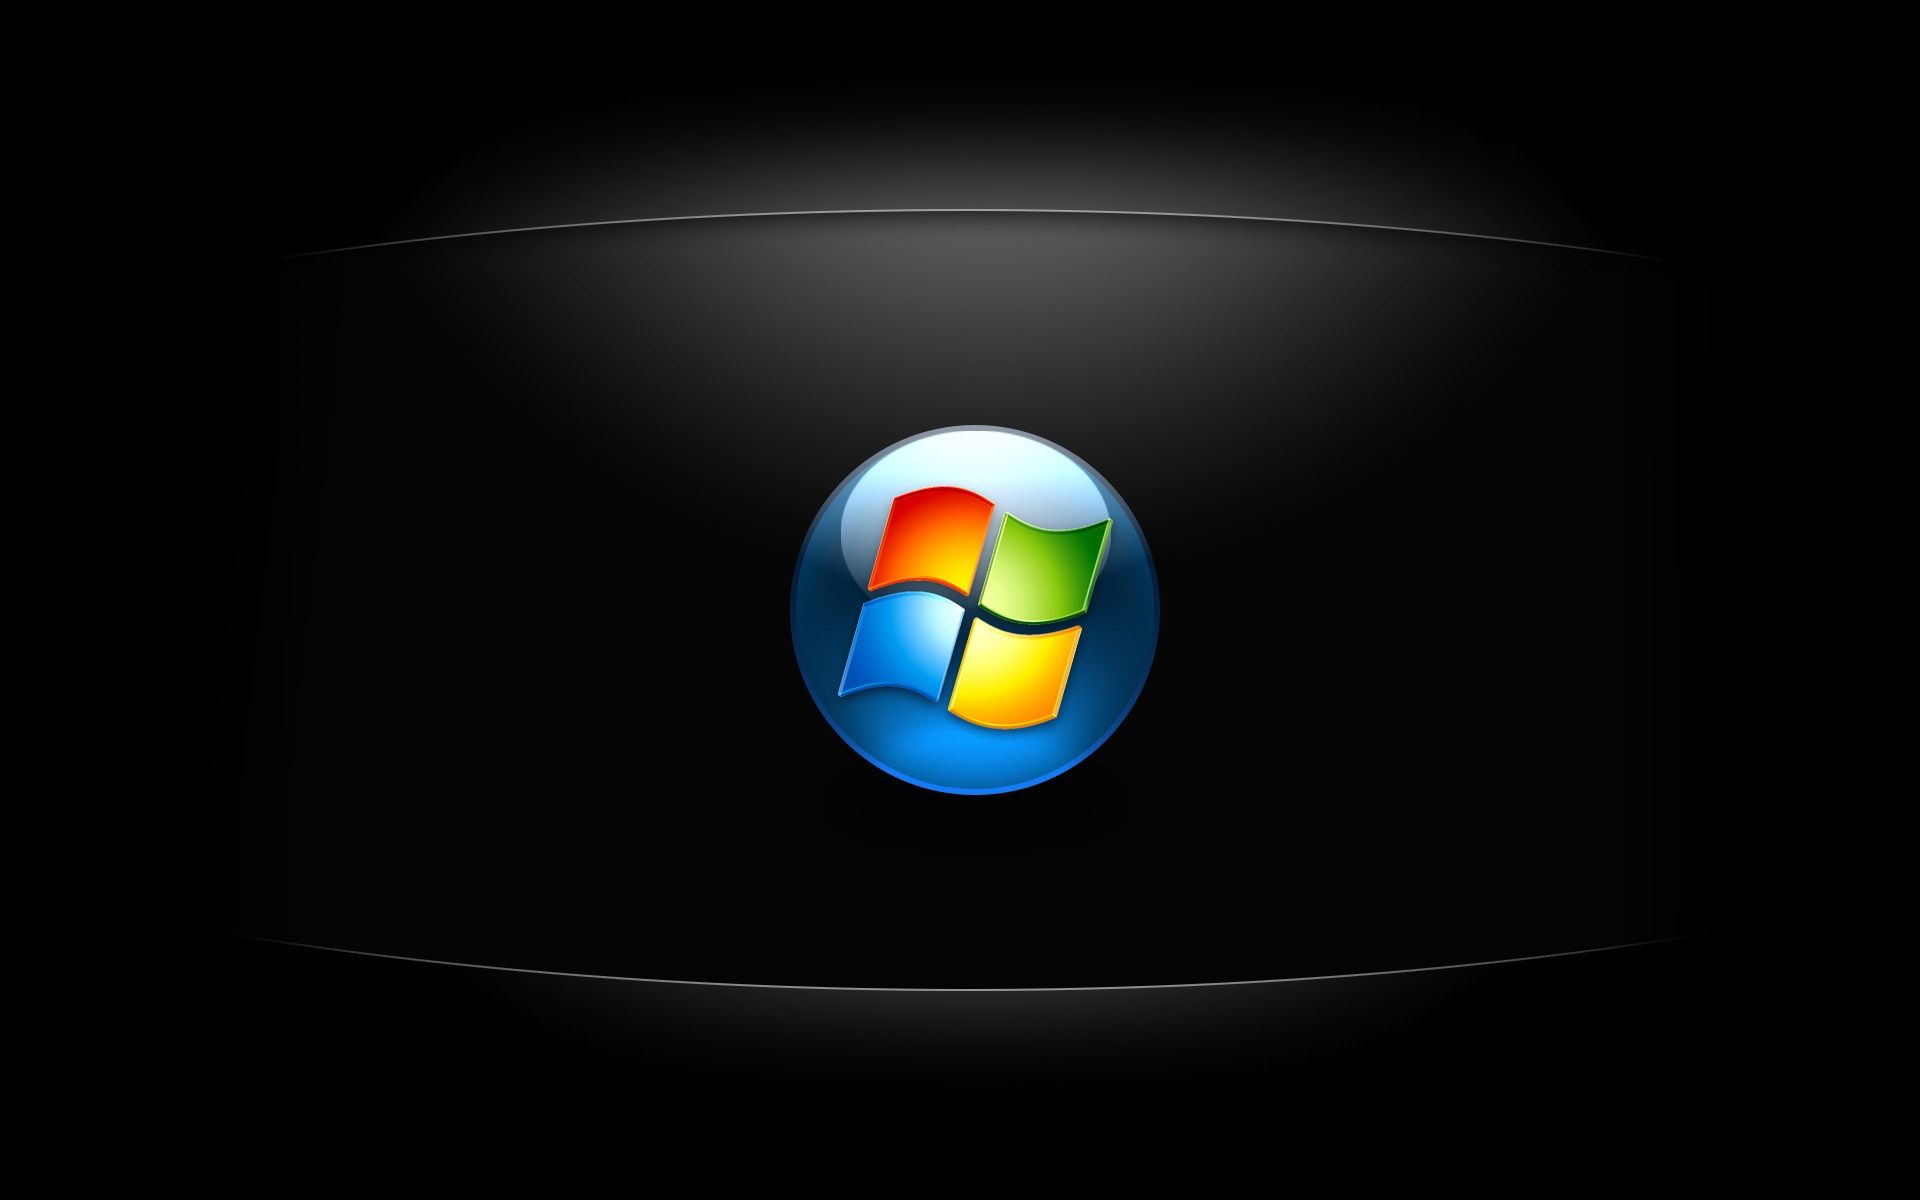 HD Wallpapers for Windows 7 | PixelsTalk.Net